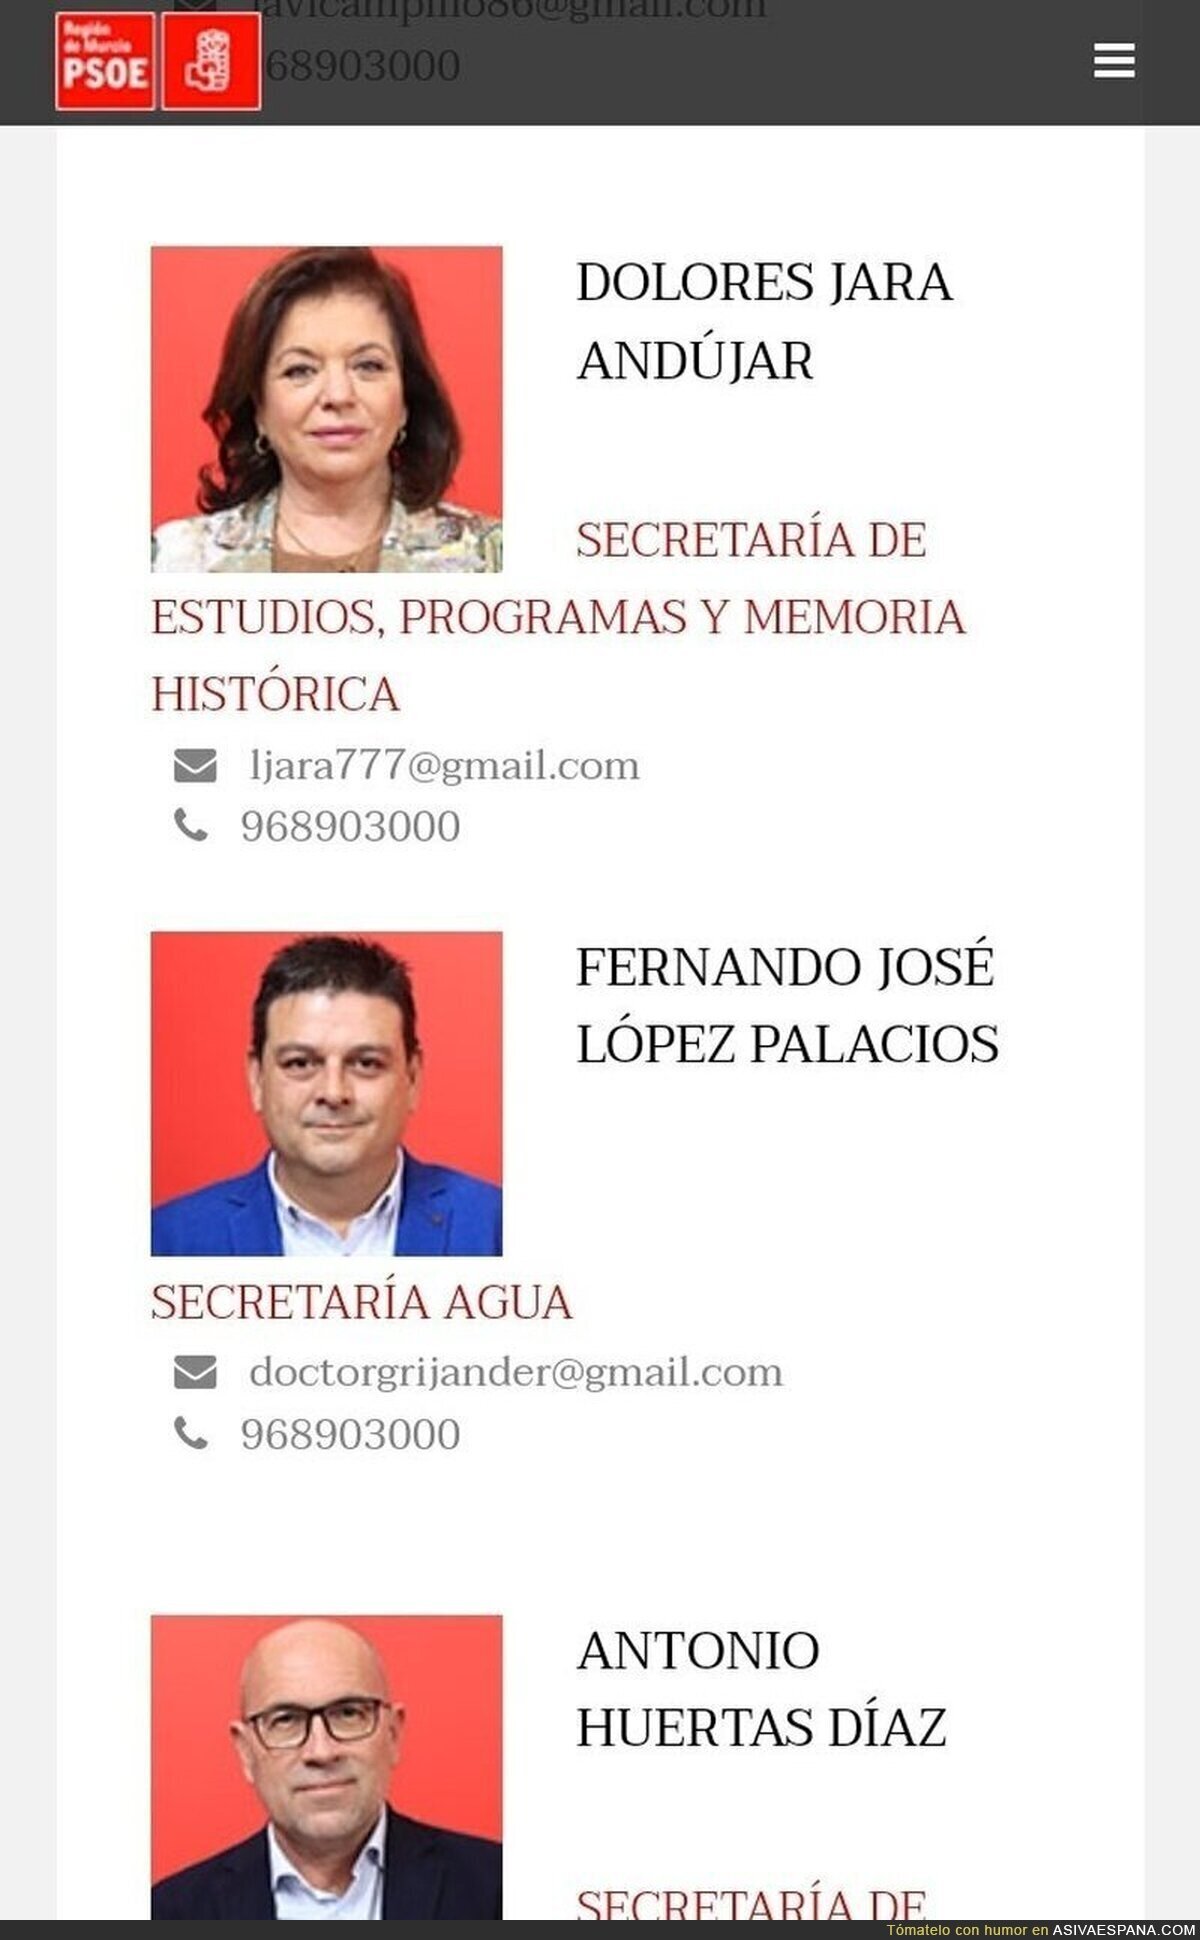 Mirad el correo de este candidato del PSOE en Murcia , por @follaldre